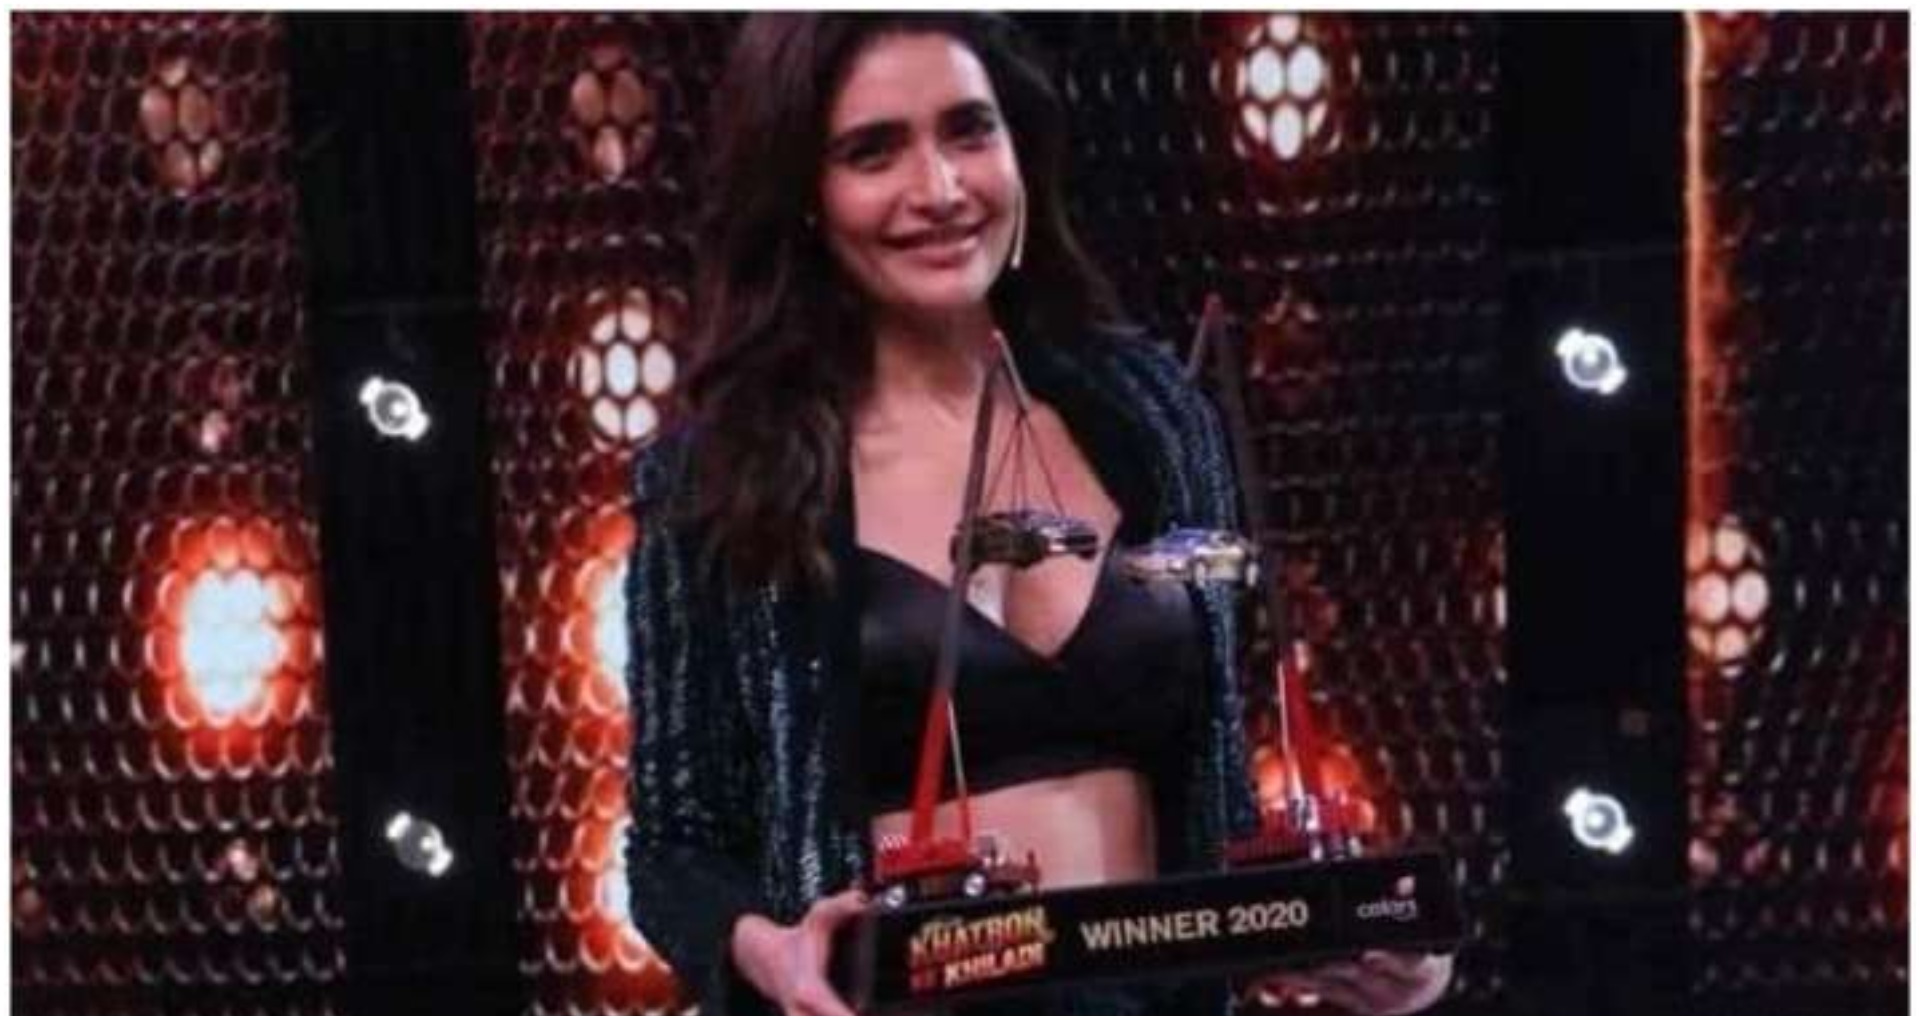 Khatron Ke Khiladi 10 winner Karishma tanna: करिश्मा तन्ना ने जीता खतरों के खिलाड़ी 10 का खिताब